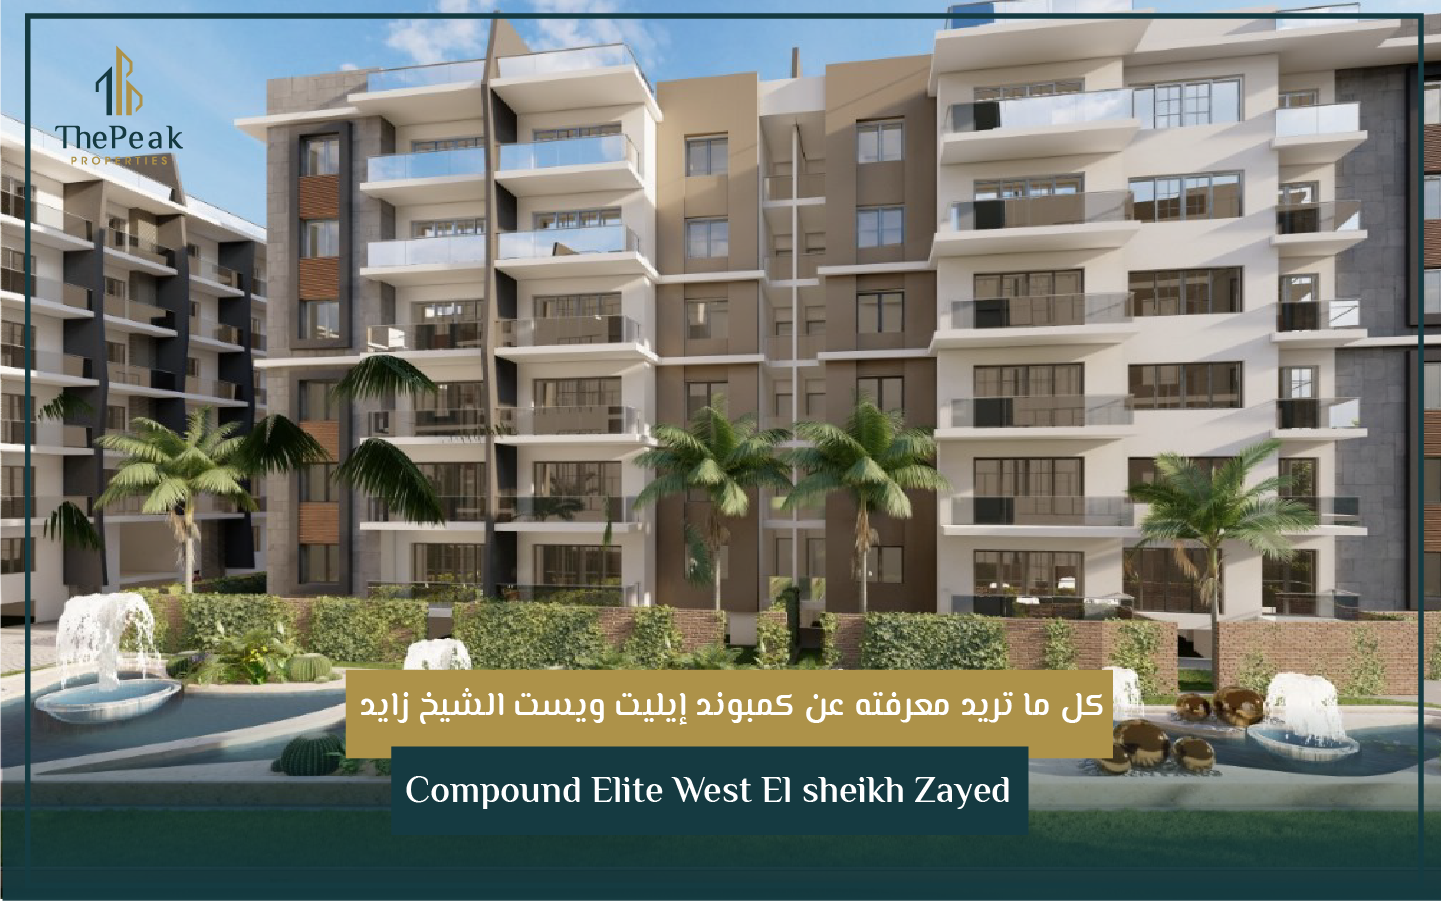 "شقة للبيع بالتقسيط  في الشيخ زايد  مساحة 171 متر  مقدم 15 % و تقسيط يصل إلي 8 سنوات  في مشروع Compound Elite West El sheikh Zayed" | THE PEAK PROPERTIES